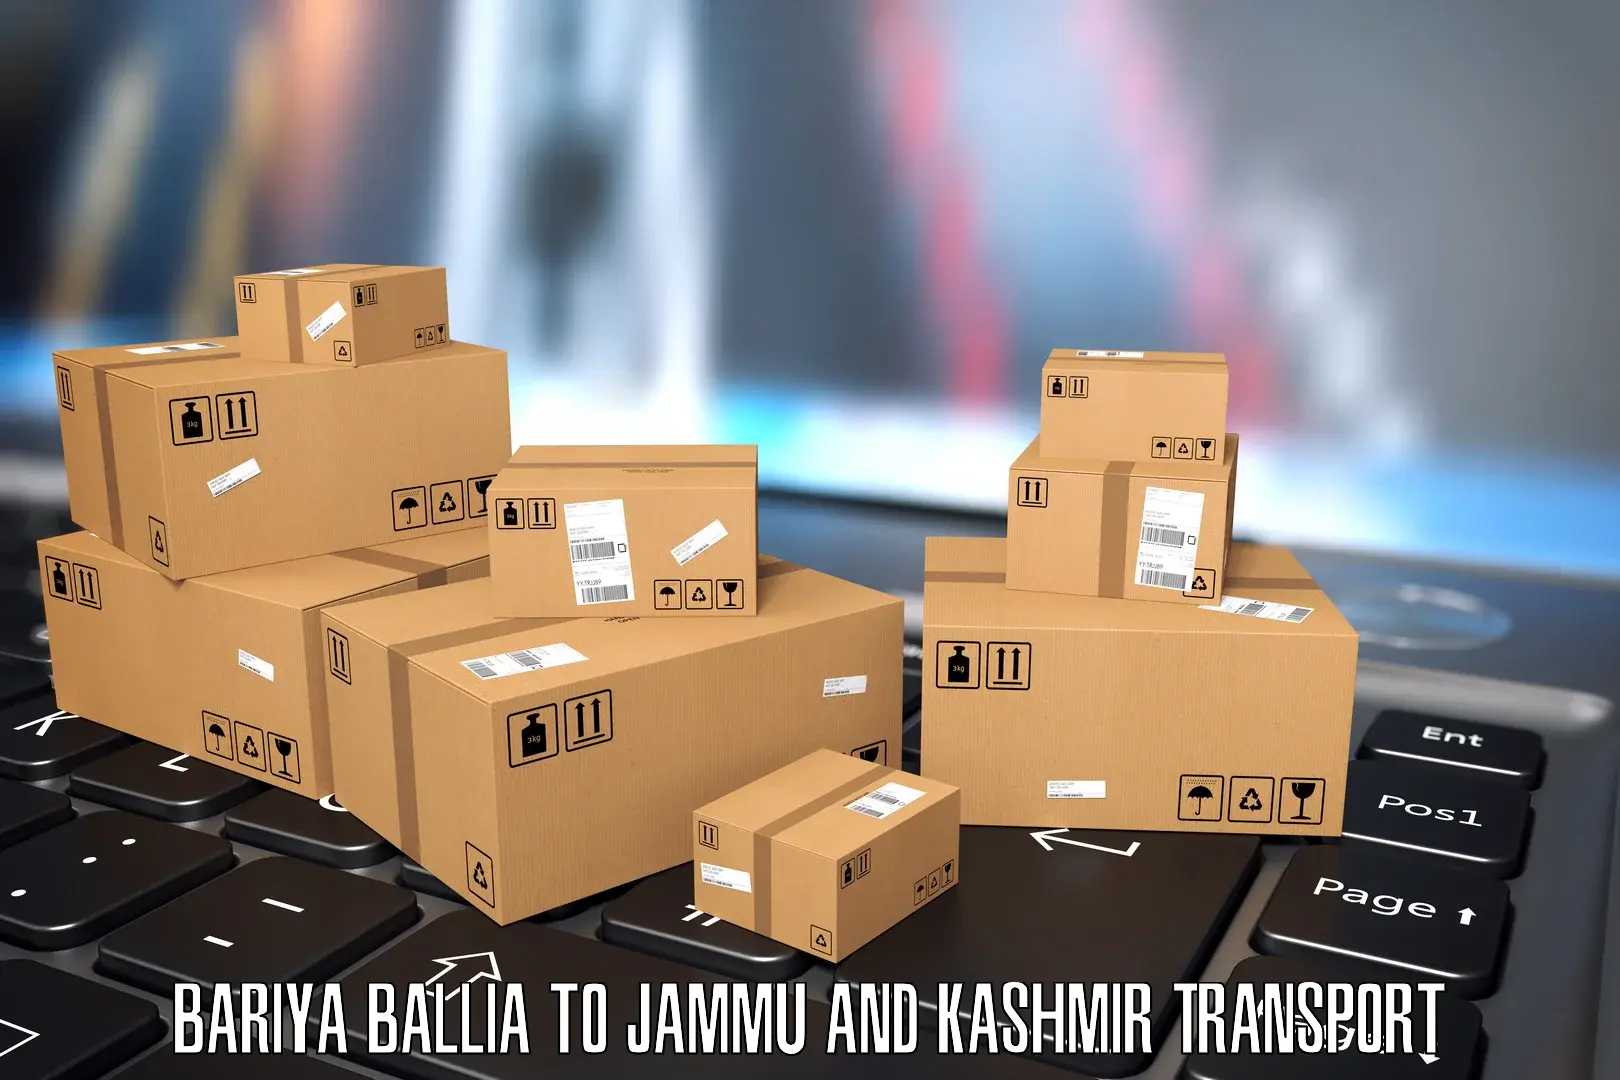 Furniture transport service Bariya Ballia to Kishtwar